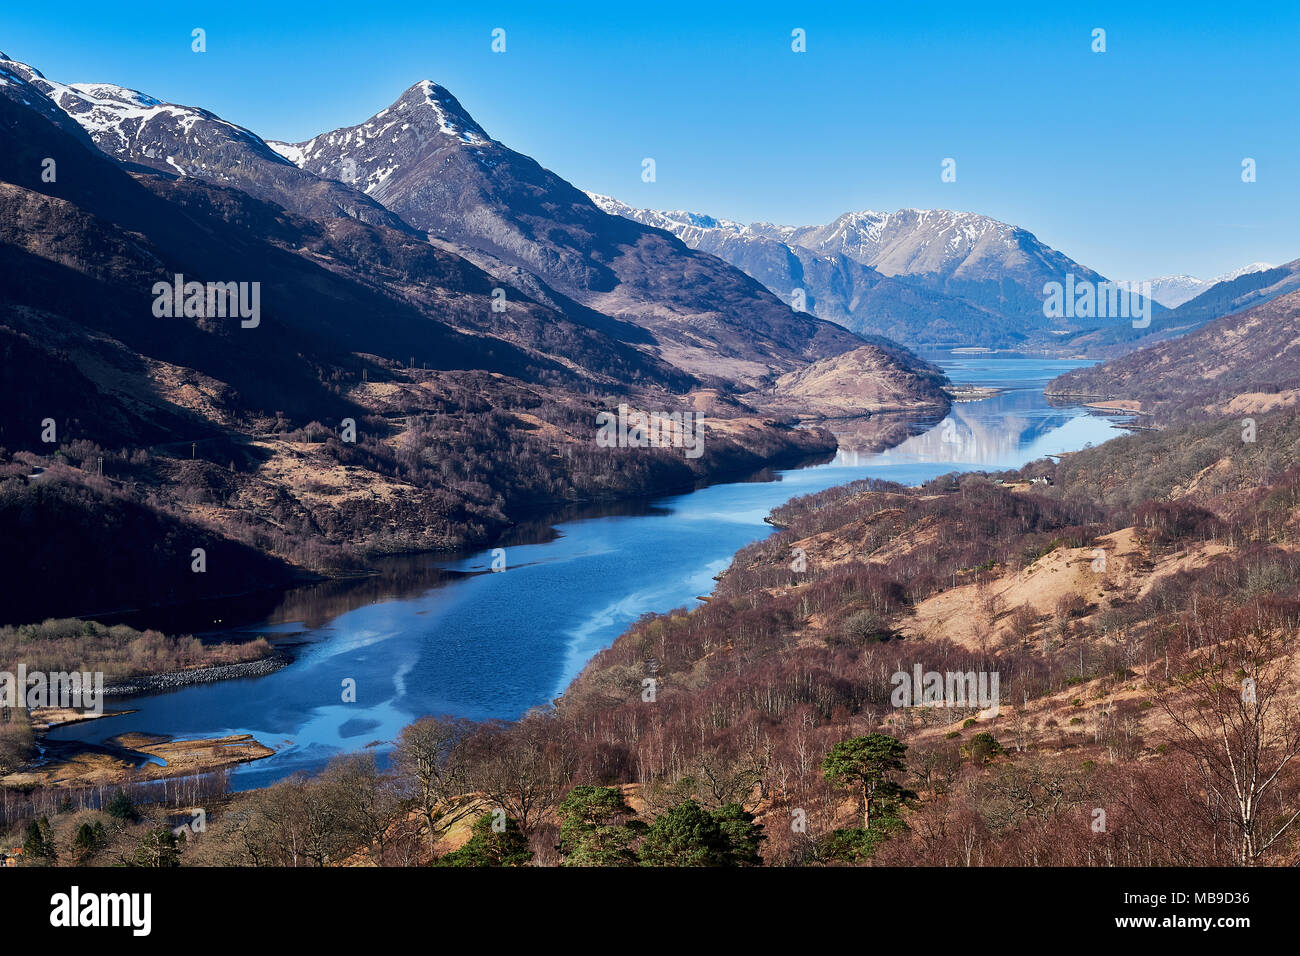 Scozia highlands, Loch Leven, Kinlochmore, Kinlochleven nelle Highlands scozzesi Foto Stock